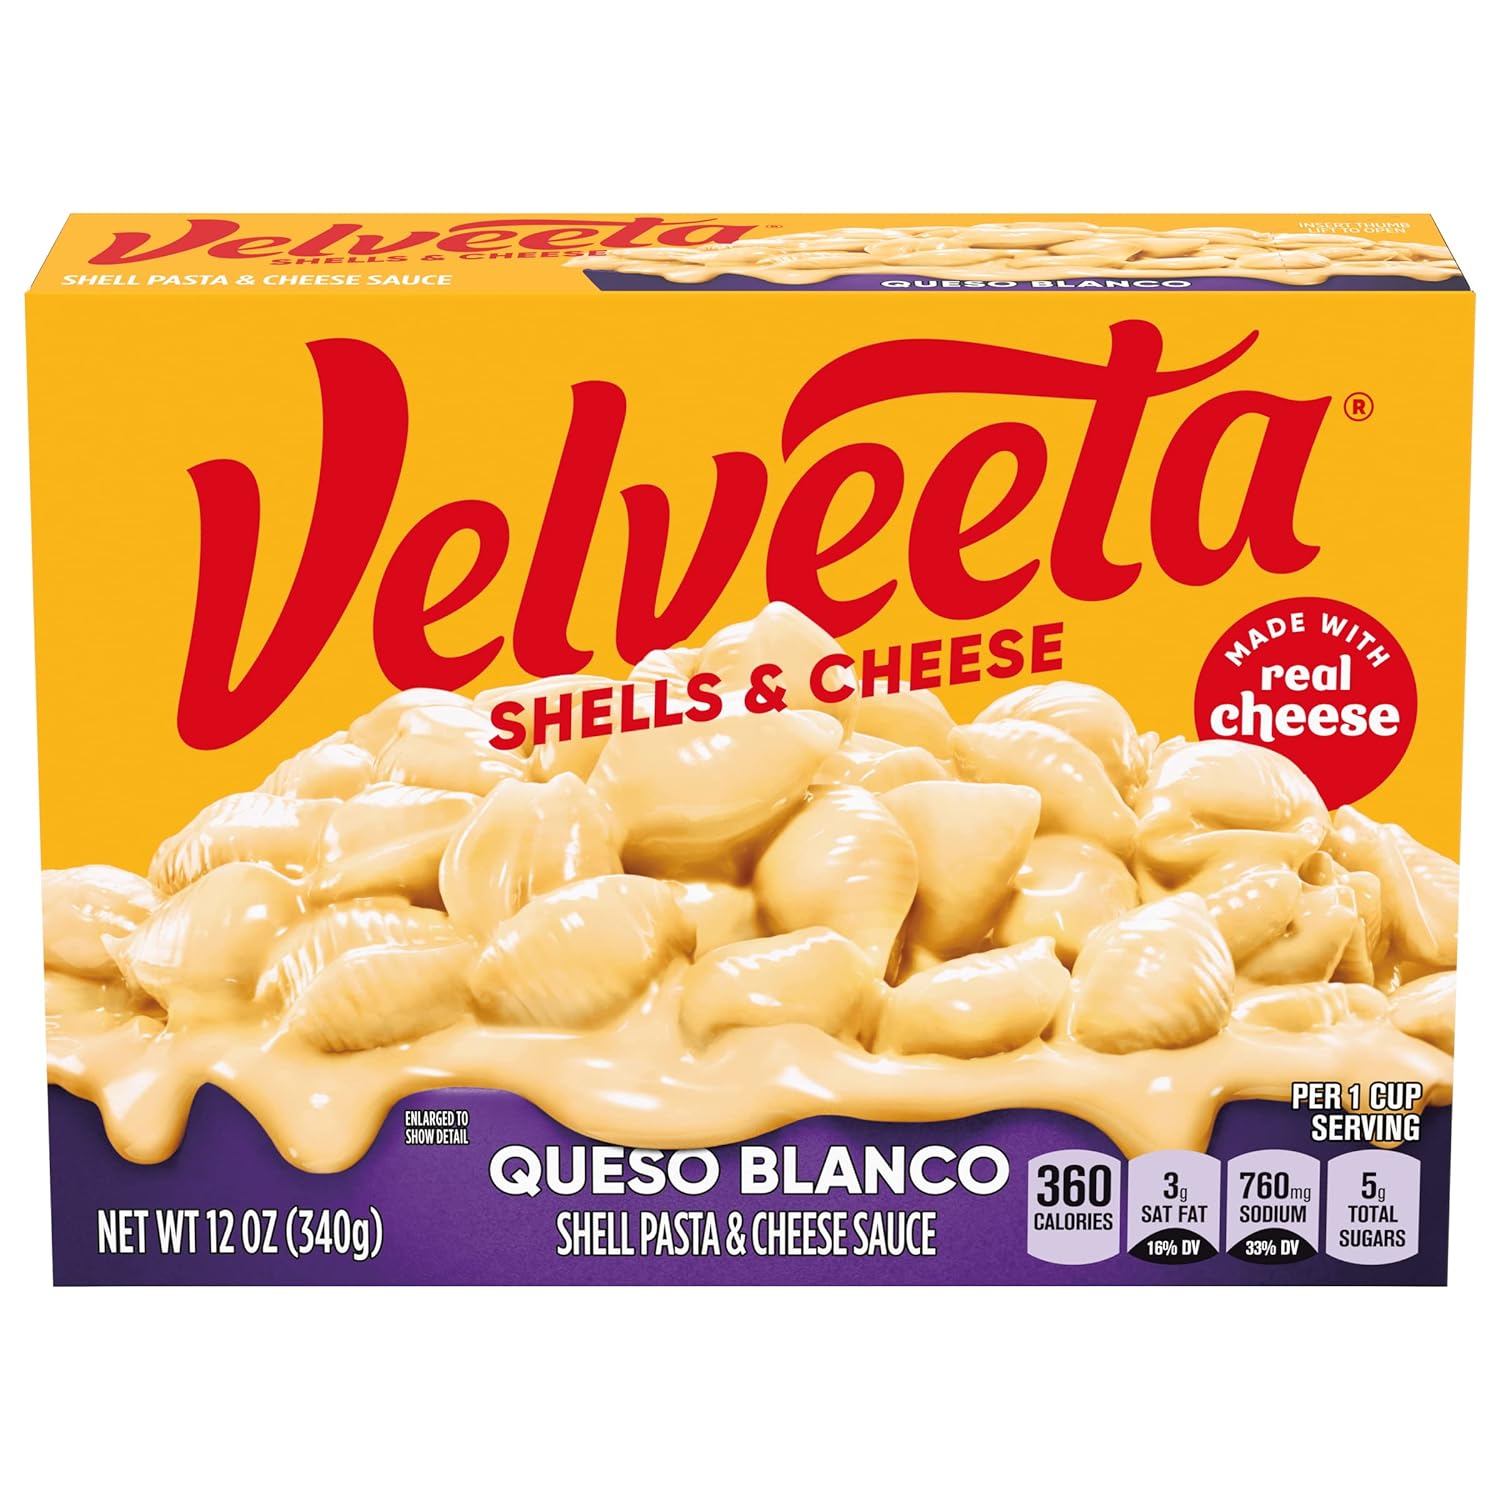 Velveeta Shells & Cheese Queso Blanco Shell Pasta & Cheese Sauce, Holiday Recipes (12 oz Box)